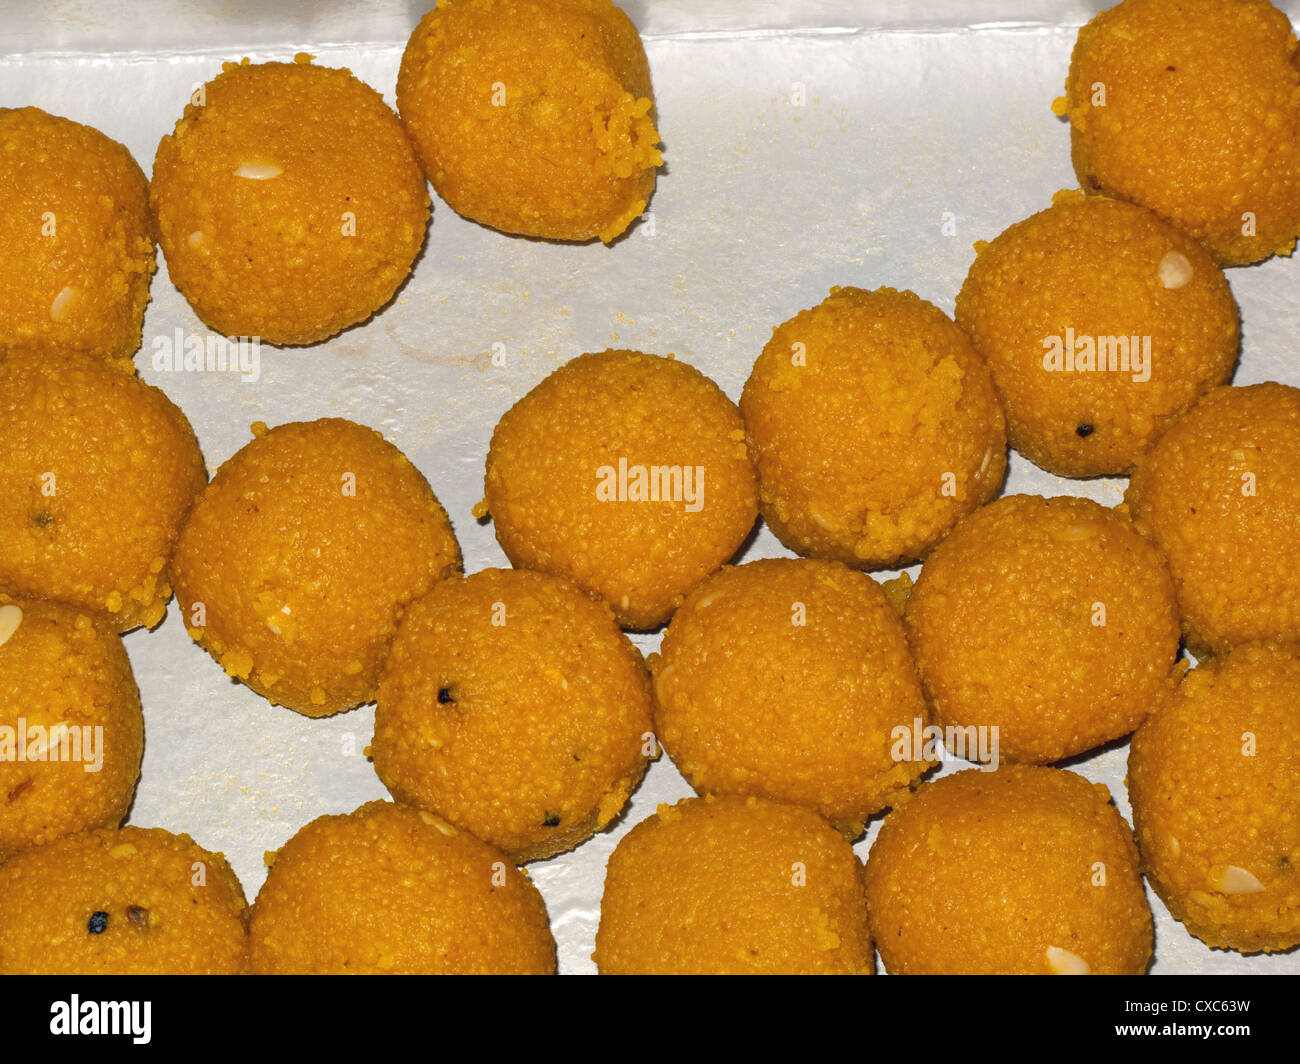 Très savoureux bonbons indiens (appelés Ladoos) faite en forme de boules ou sphères et conservés dans une boîte en carton Banque D'Images